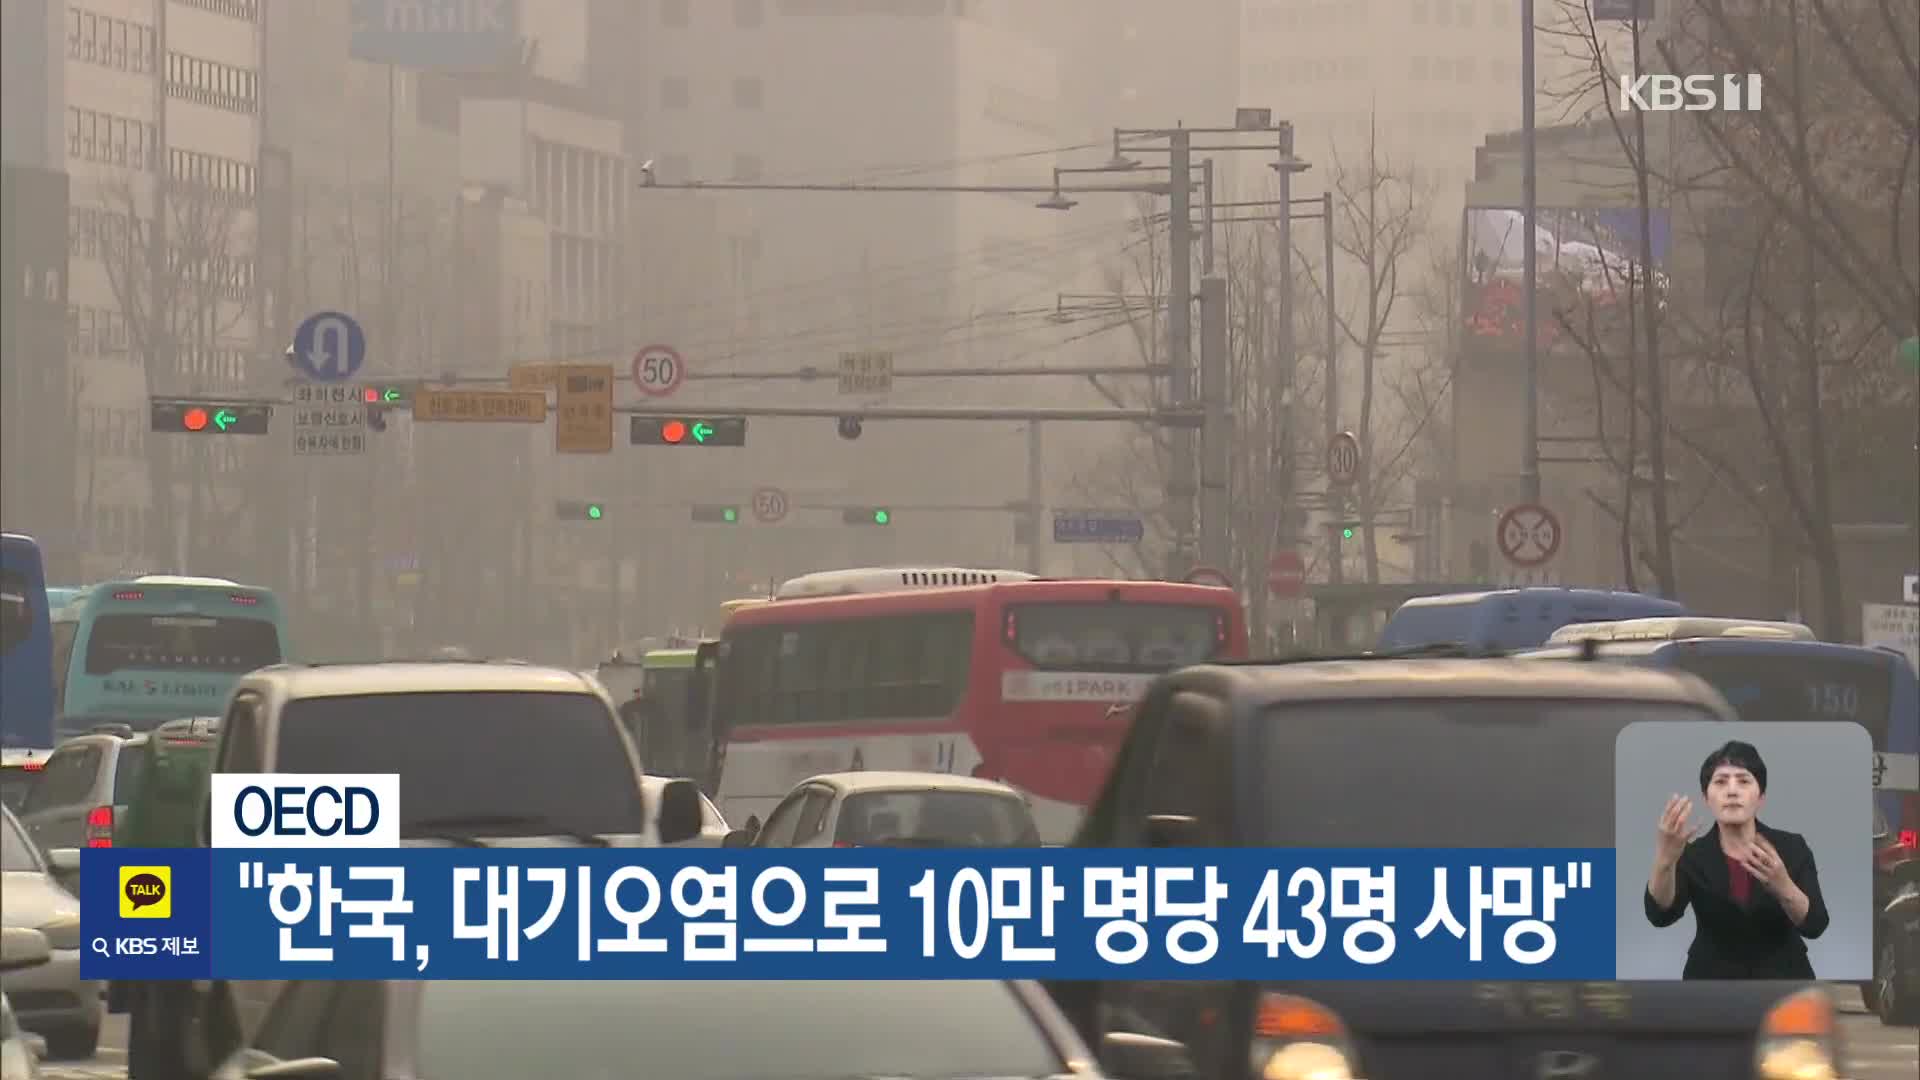 [기후는 말한다] OECD “한국, 대기오염으로 10만 명당 43명 사망”